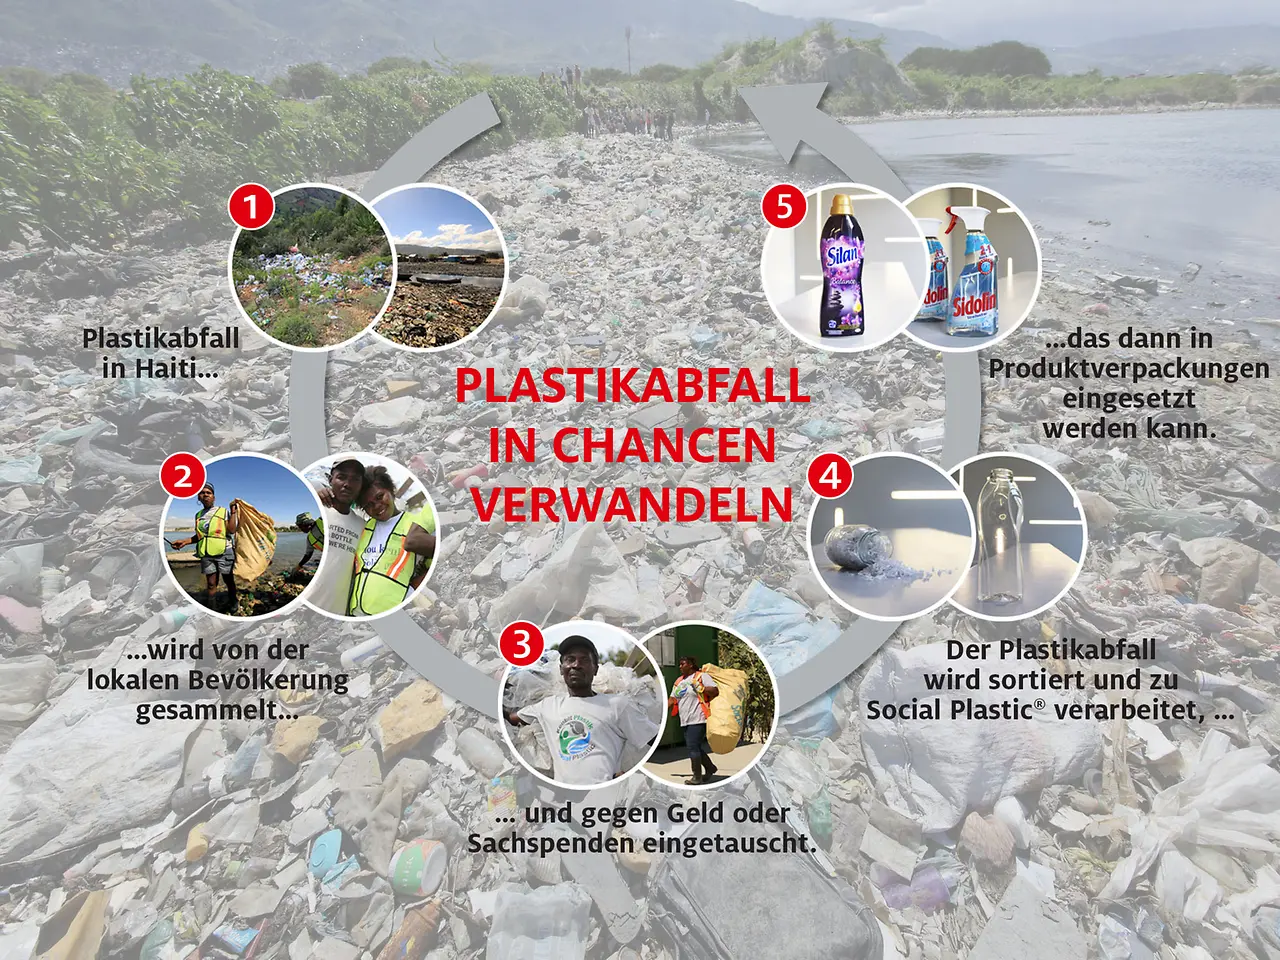 Henkel geht gemeinsam mit Plastic Bank das Abfallproblem an und hilft gleichzeitig Menschen in Armut. 